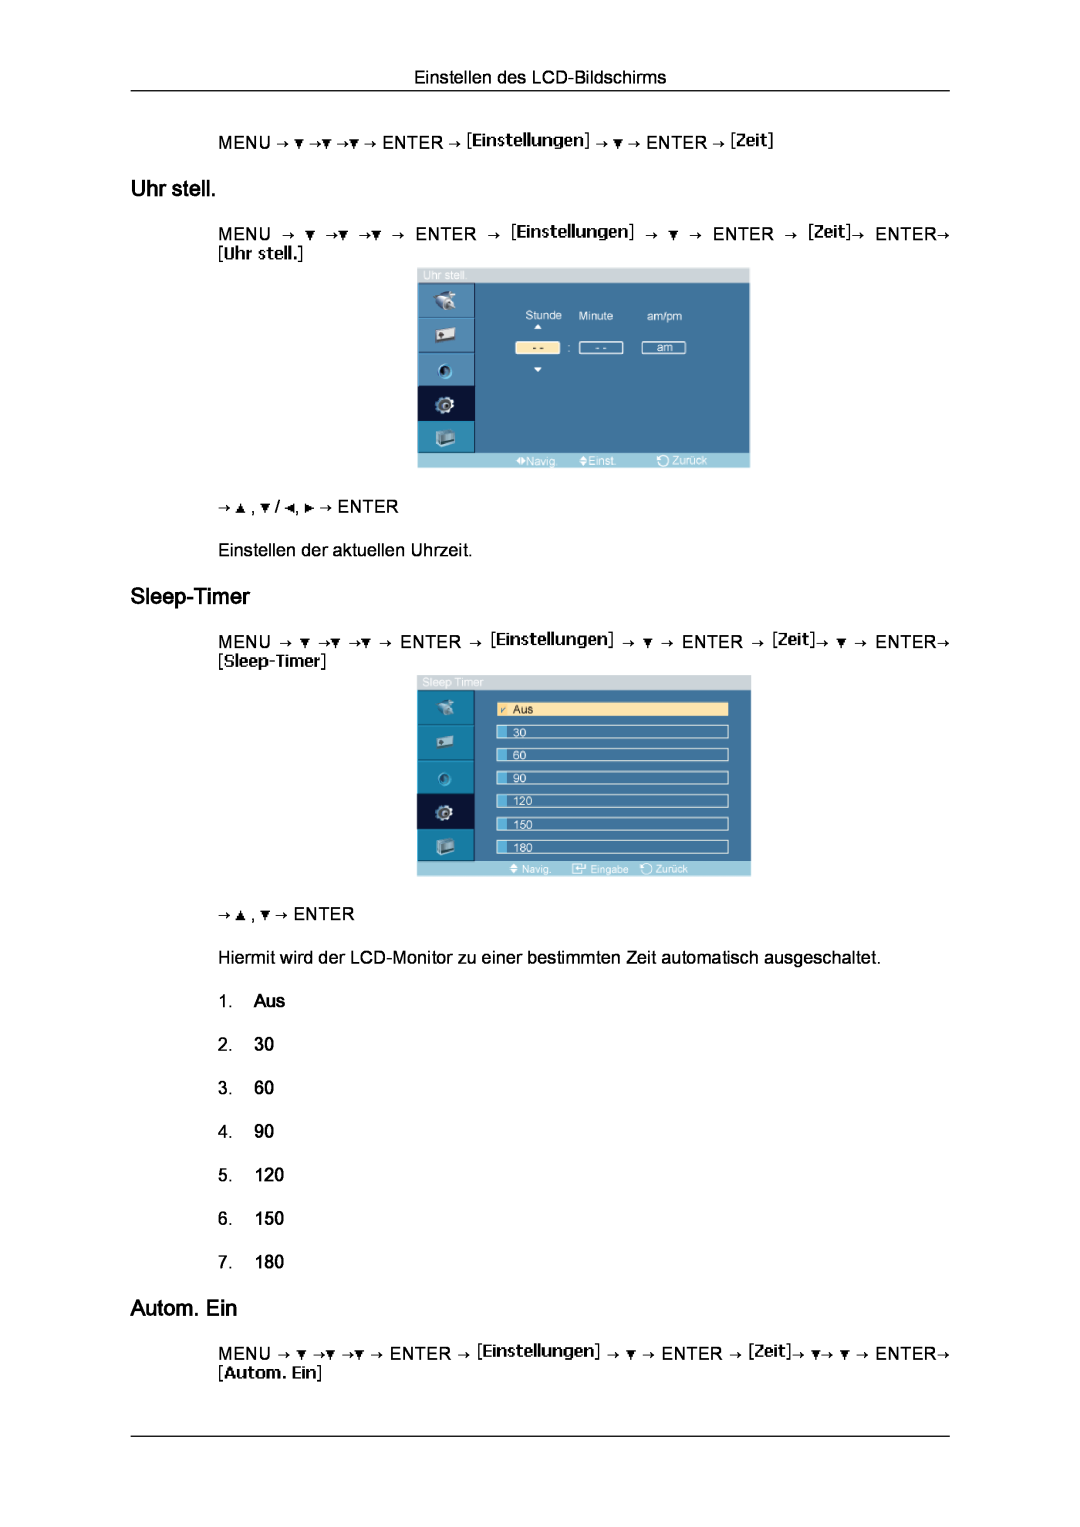 Samsung LH23PTSMBC/EN Uhr stell, Sleep-Timer, Autom. Ein, Einstellen des LCD-Bildschirms MENU → → → → ENTER → → → ENTER → 